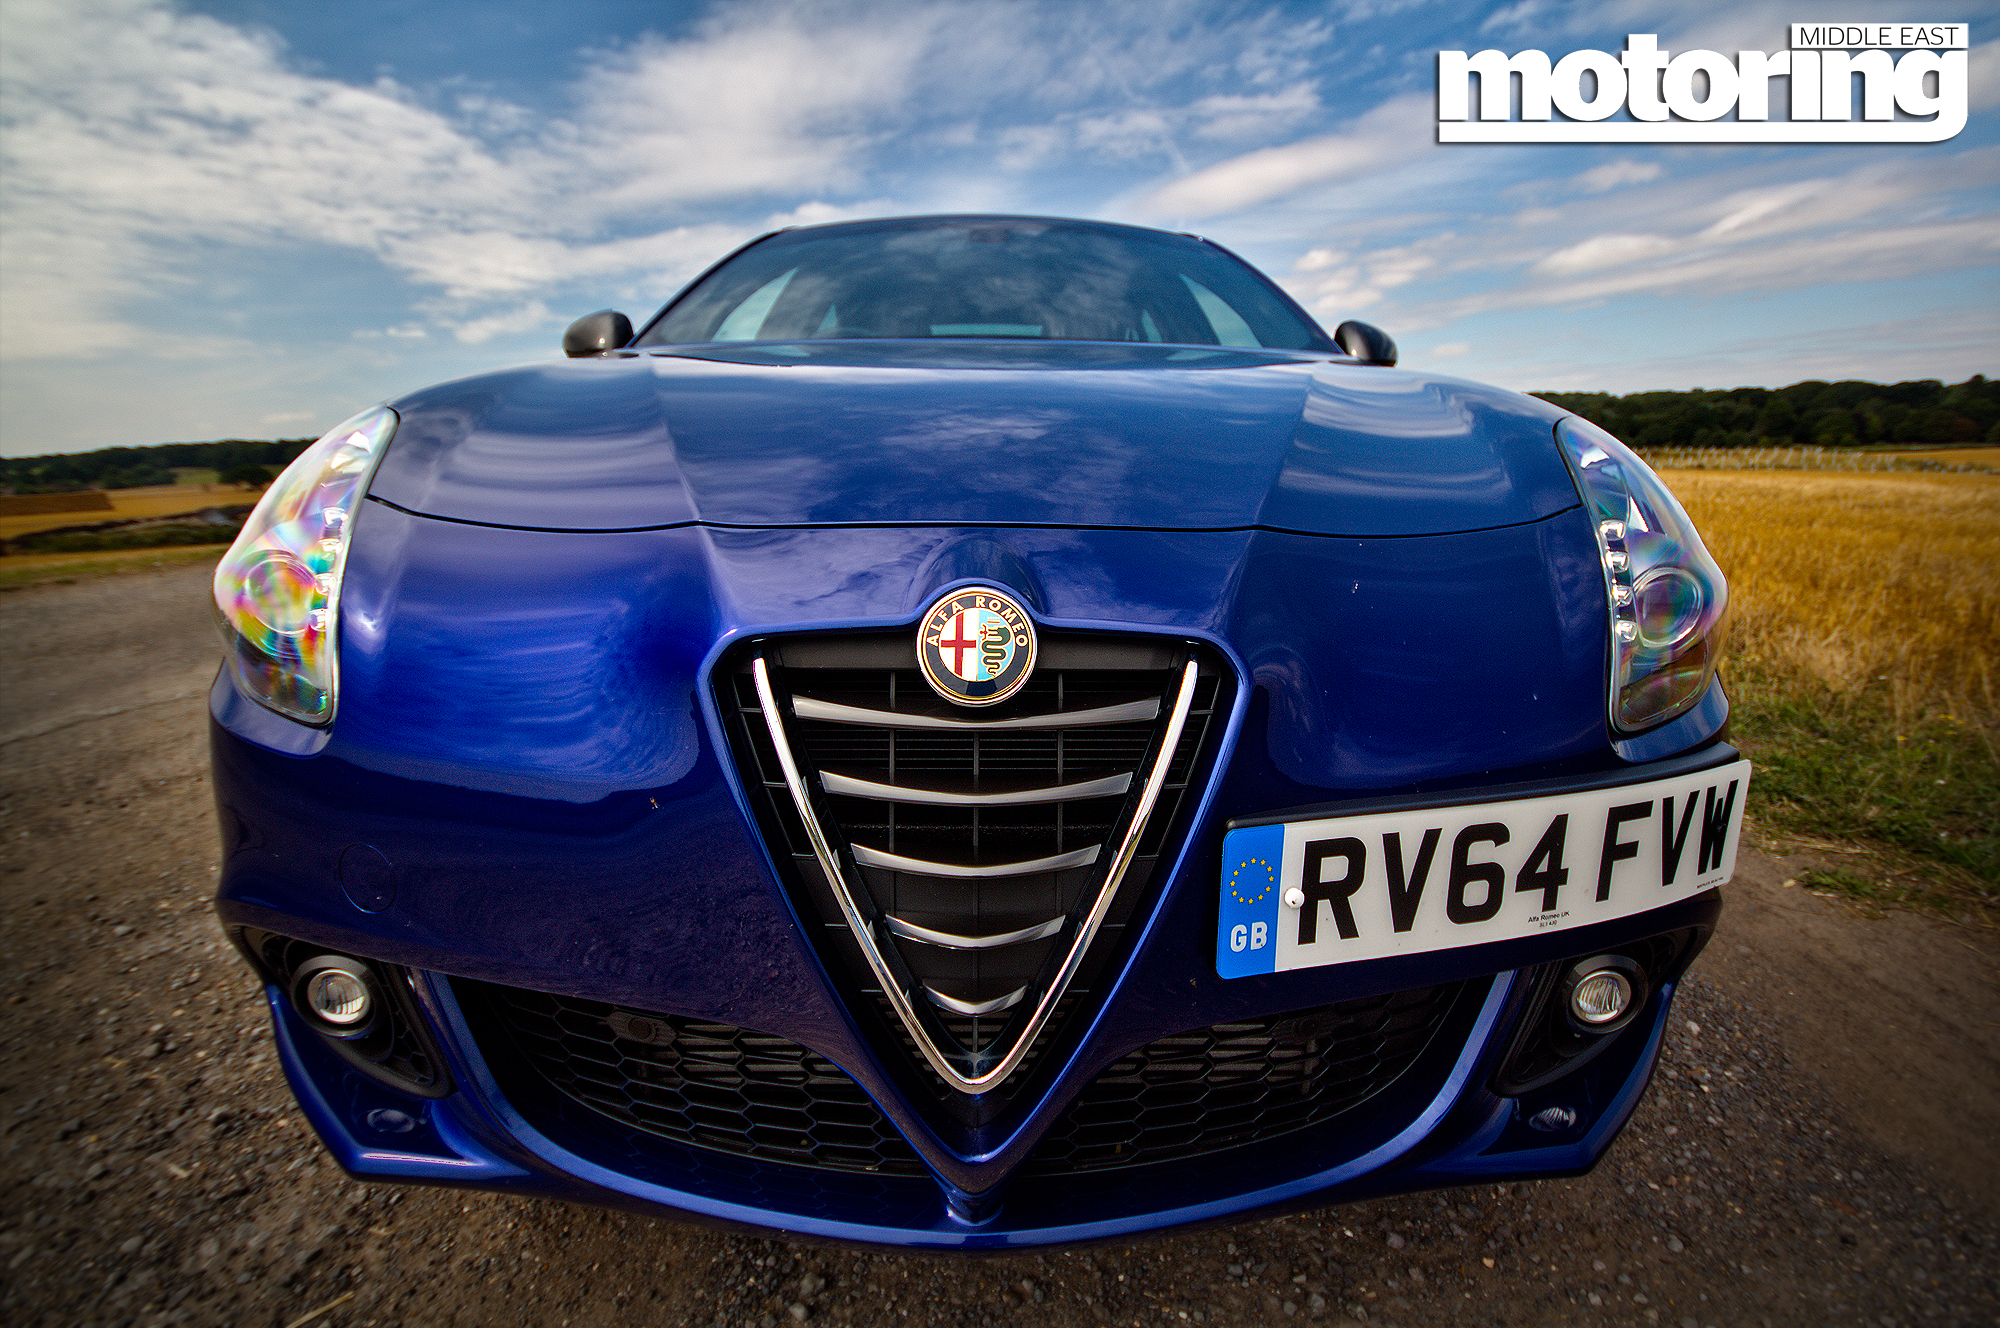 Alfa Romeo Giulietta Quadrofoglio 2015 review